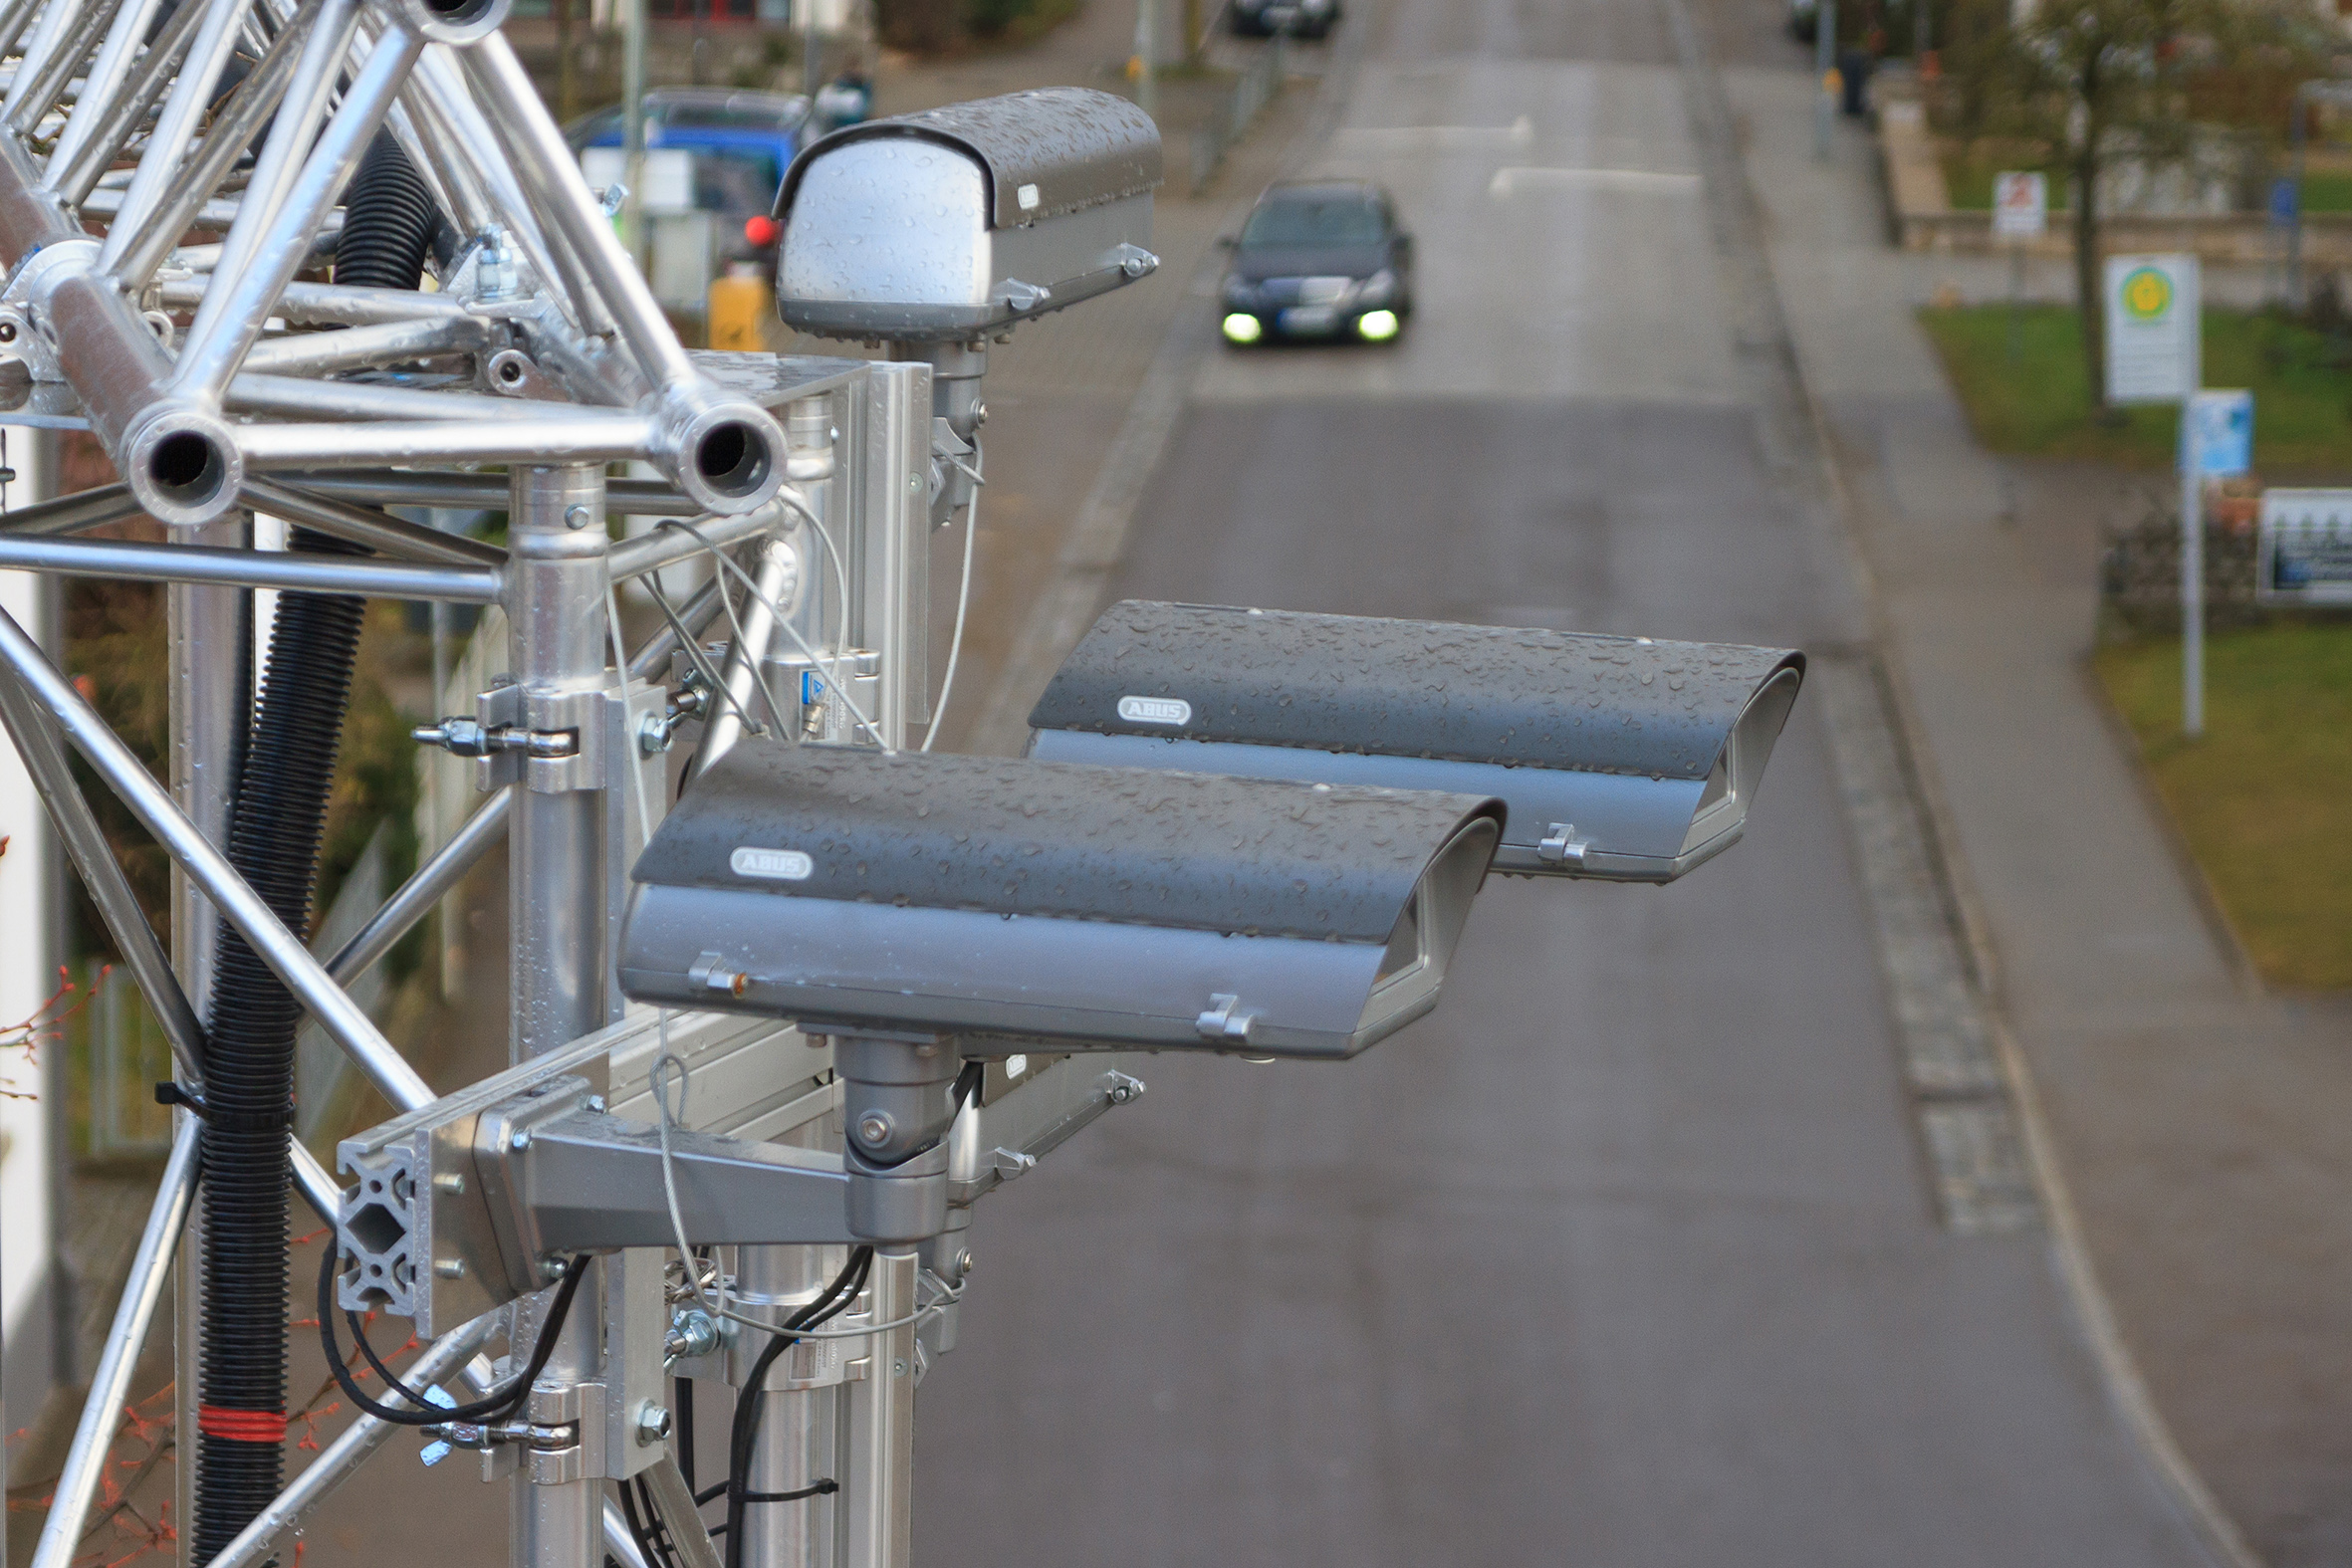 Czujniki w latarniach ulicznych pozwalają na wczesne wykrywanie obiektów, nawet jeśli są zasłonięte.